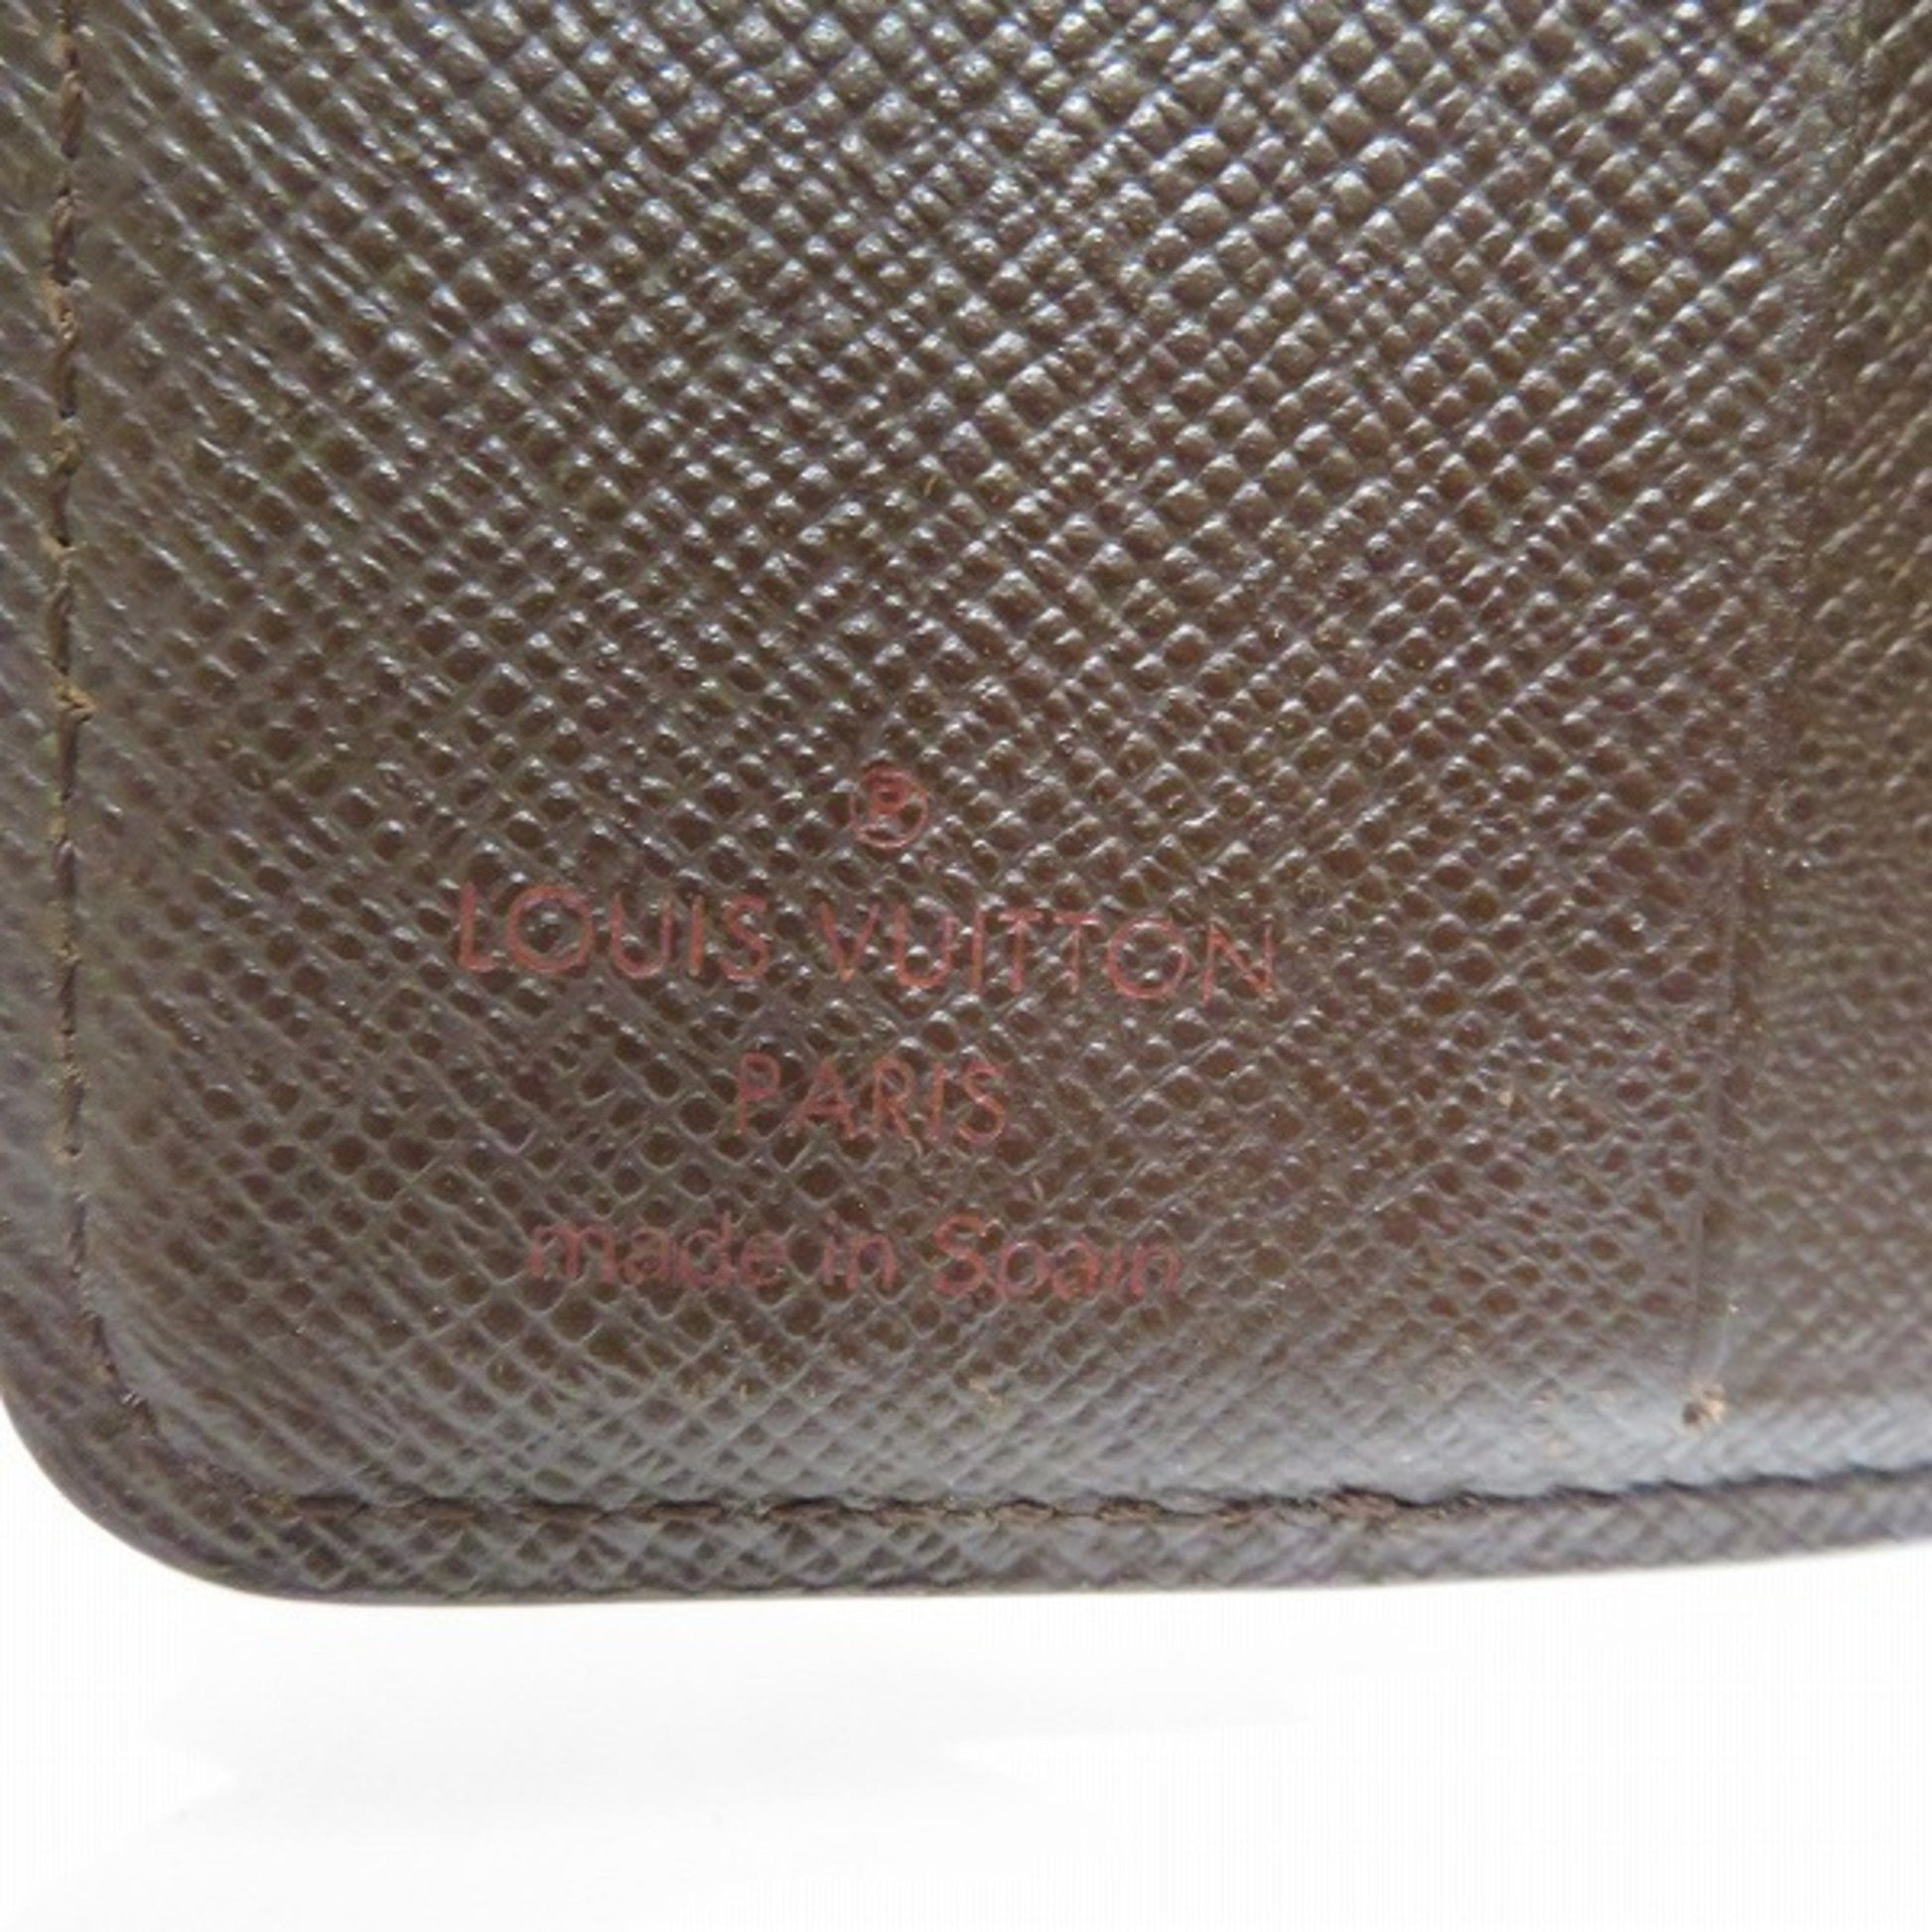 Louis Vuitton LOUVUITTON zip bi-fold wallet Damier Ebene N61668